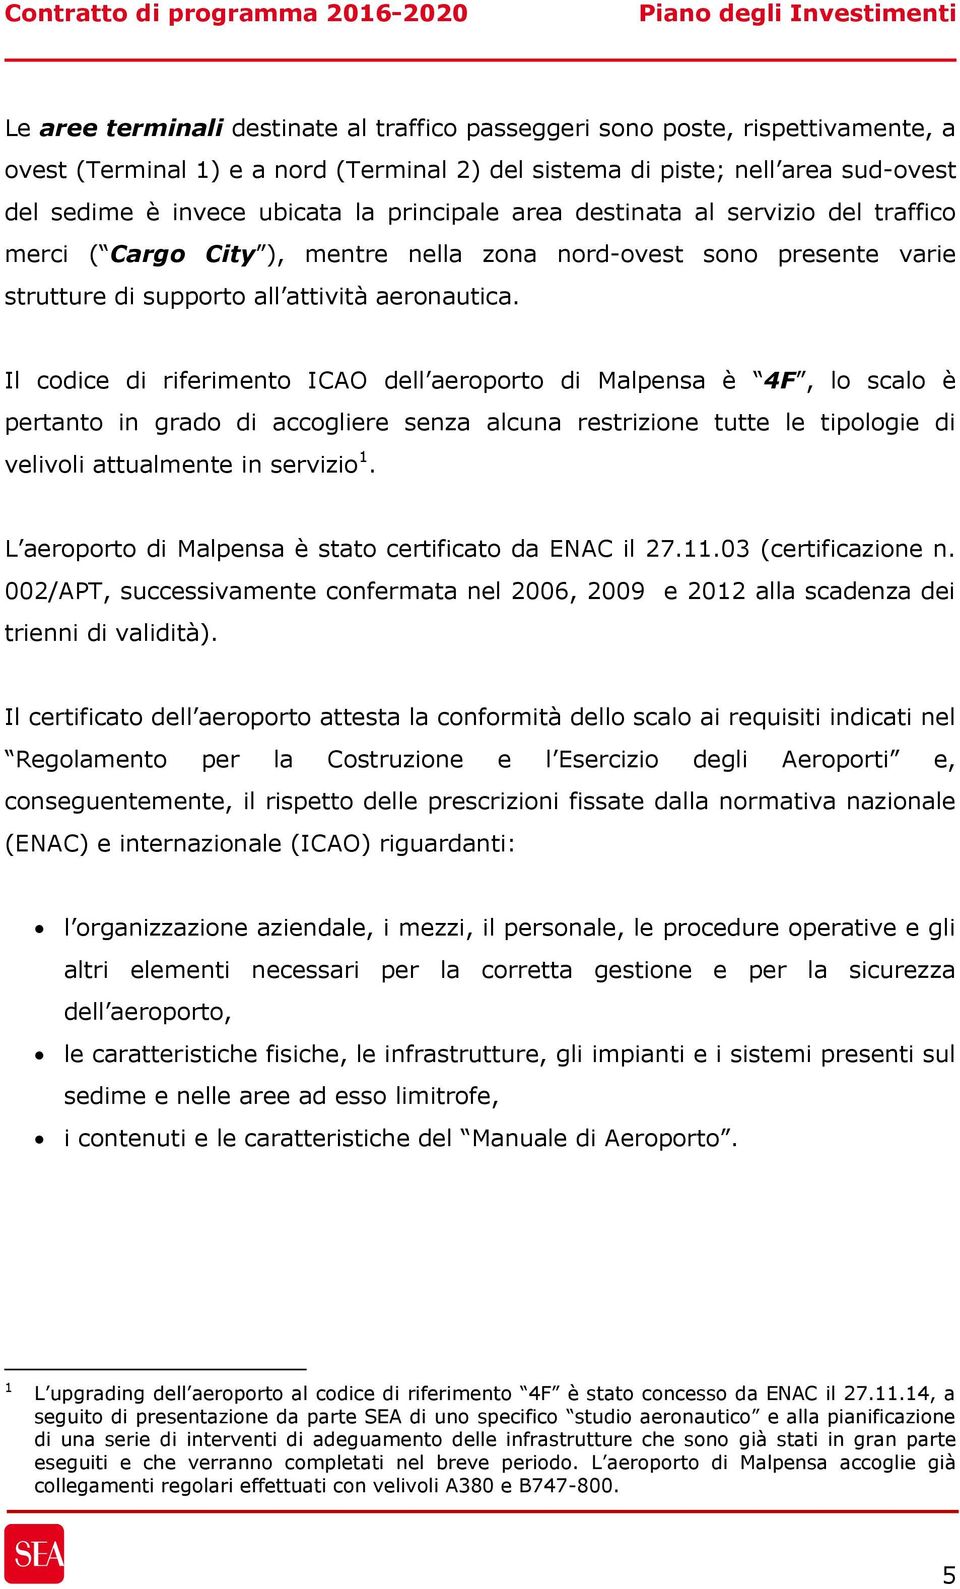 Il codice di riferimento ICAO dell aeroporto di Malpensa è 4F, lo scalo è pertanto in grado di accogliere senza alcuna restrizione tutte le tipologie di velivoli attualmente in servizio 1.